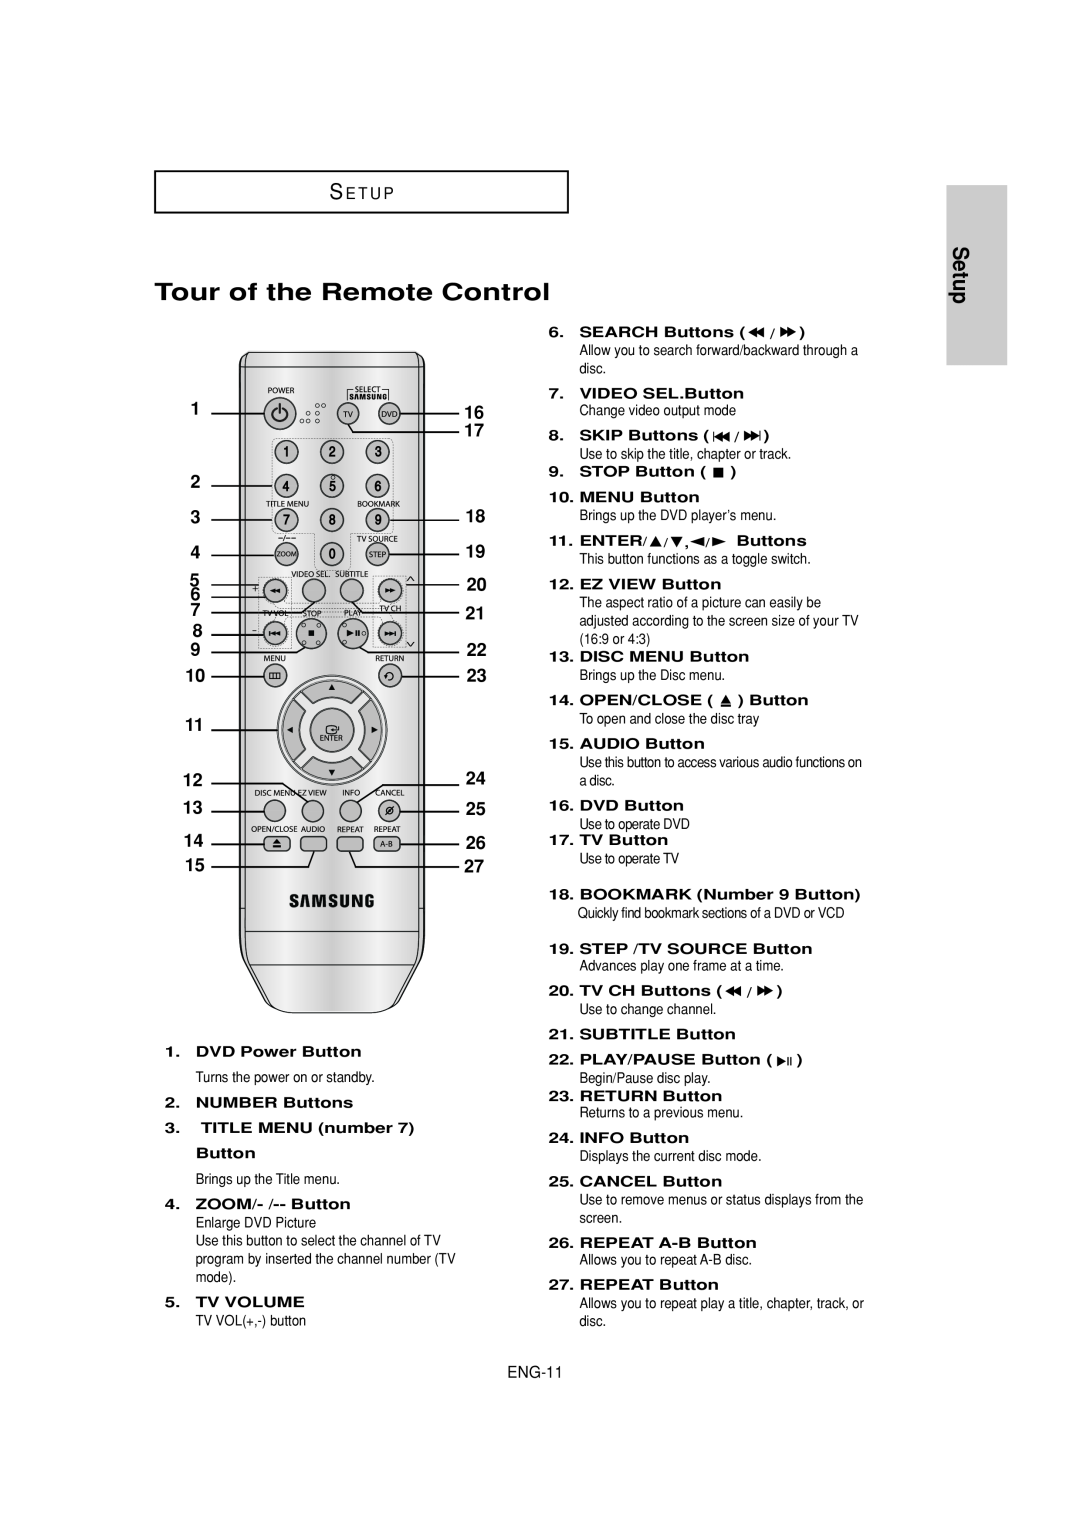 Samsung DVD-P181 manual Tour of the Remote Control, Setup, S E T U P, ENG-11 